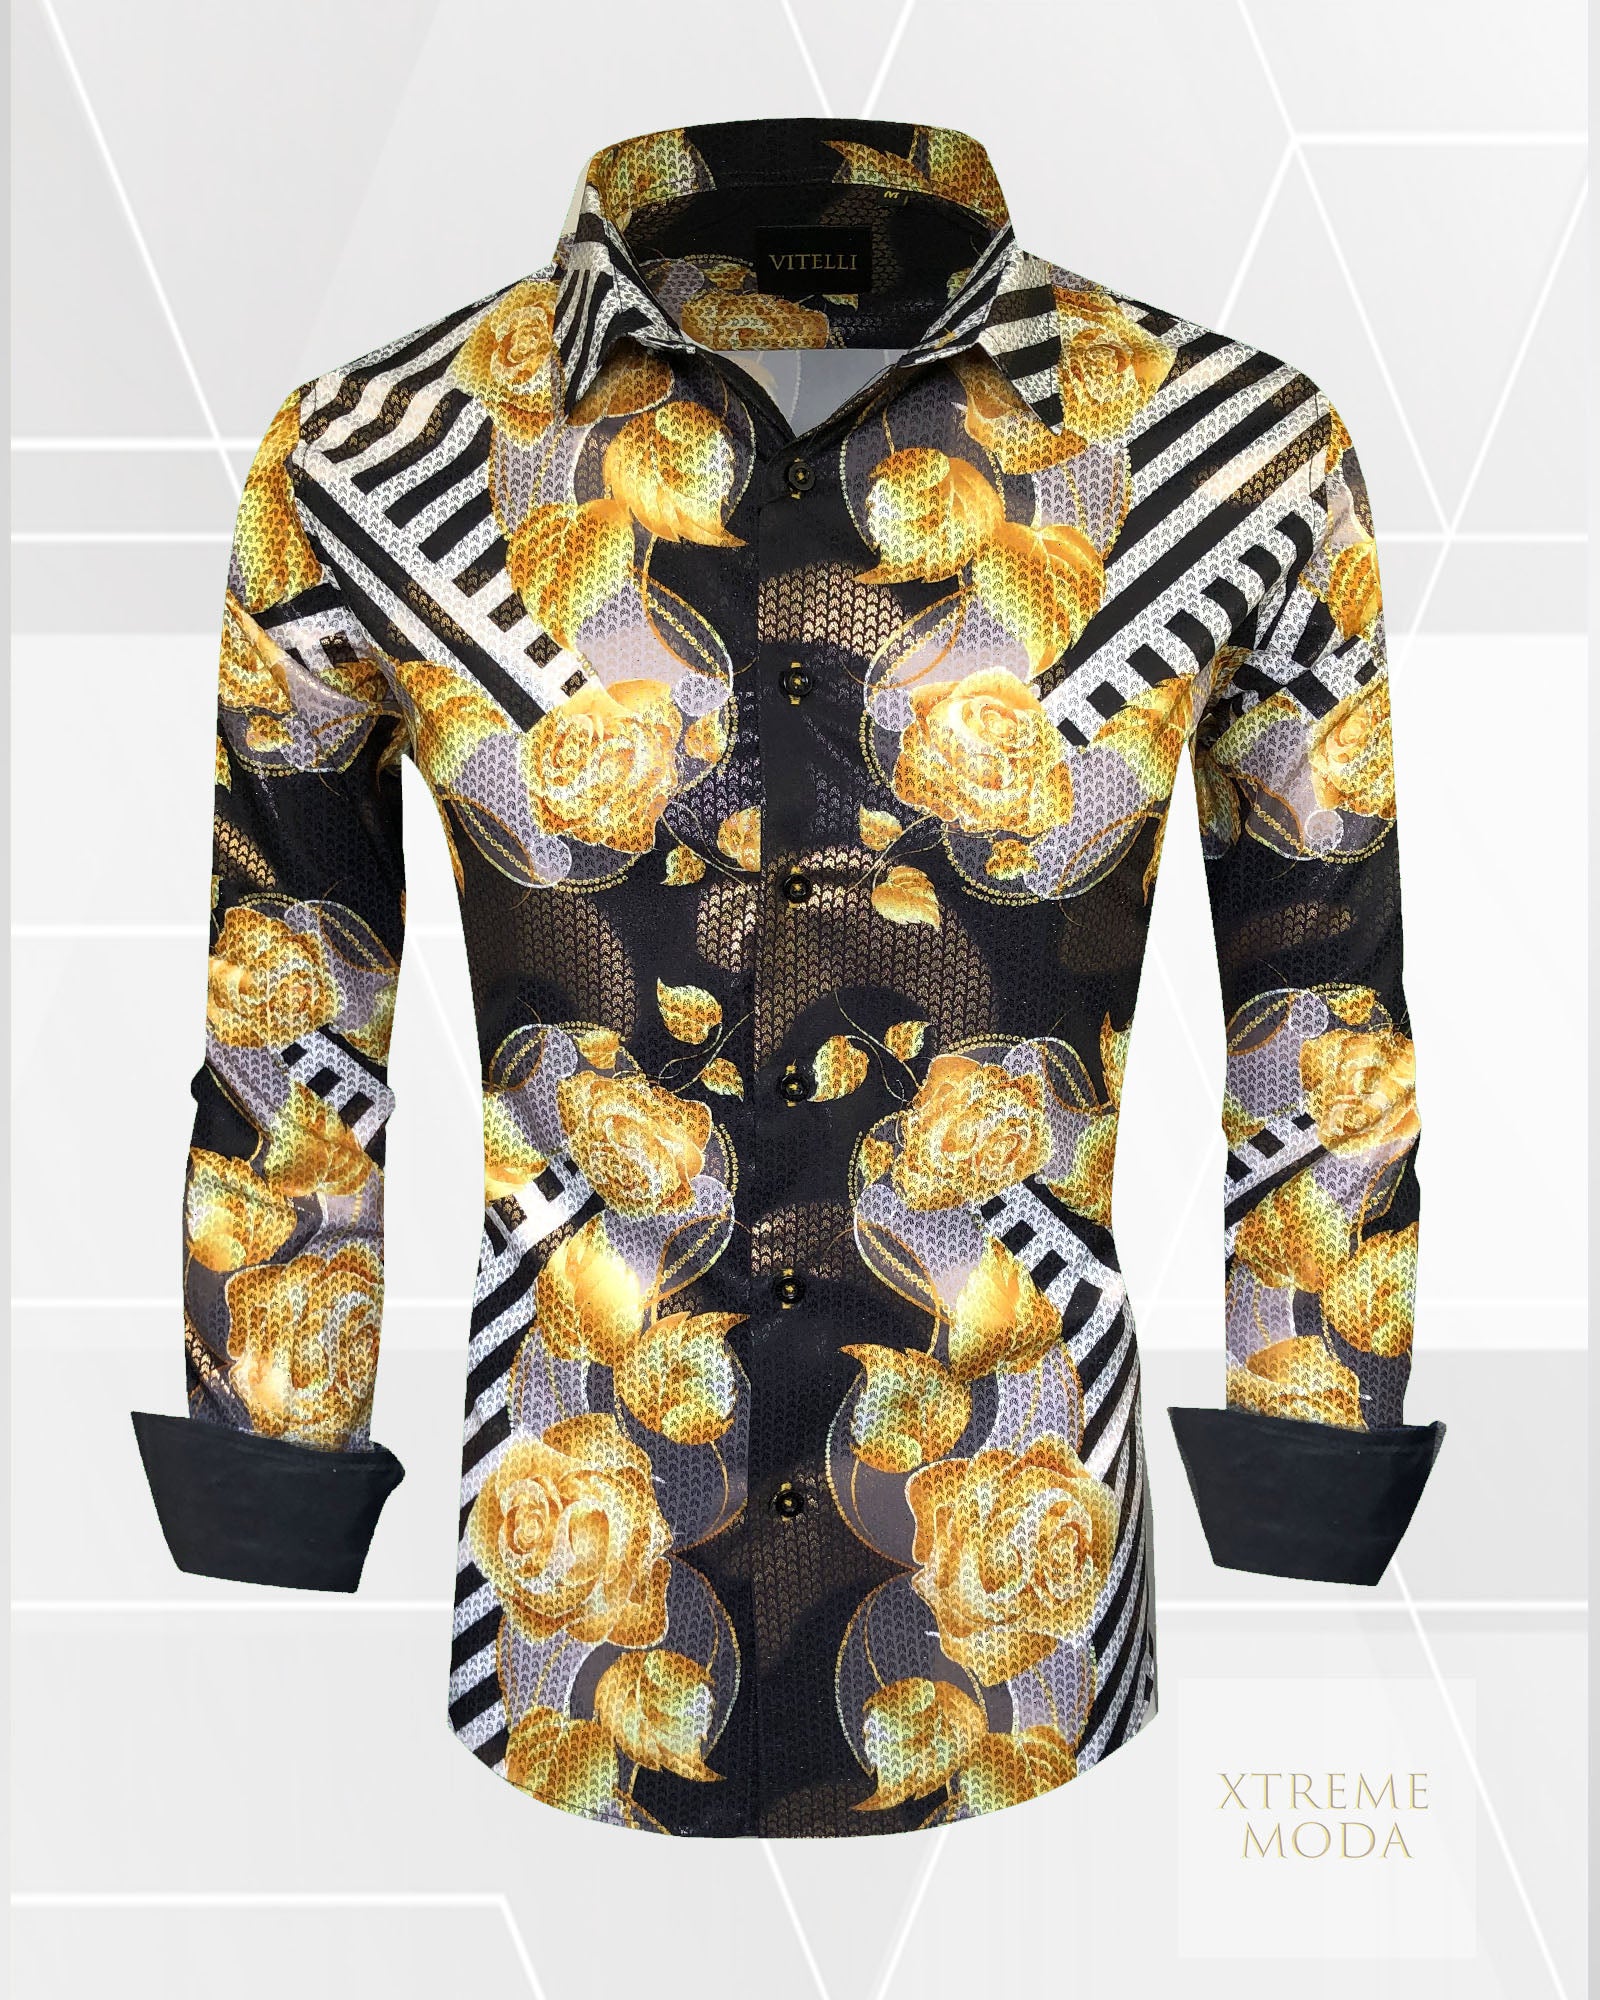 Vitelli modern fit gold roses design shirt